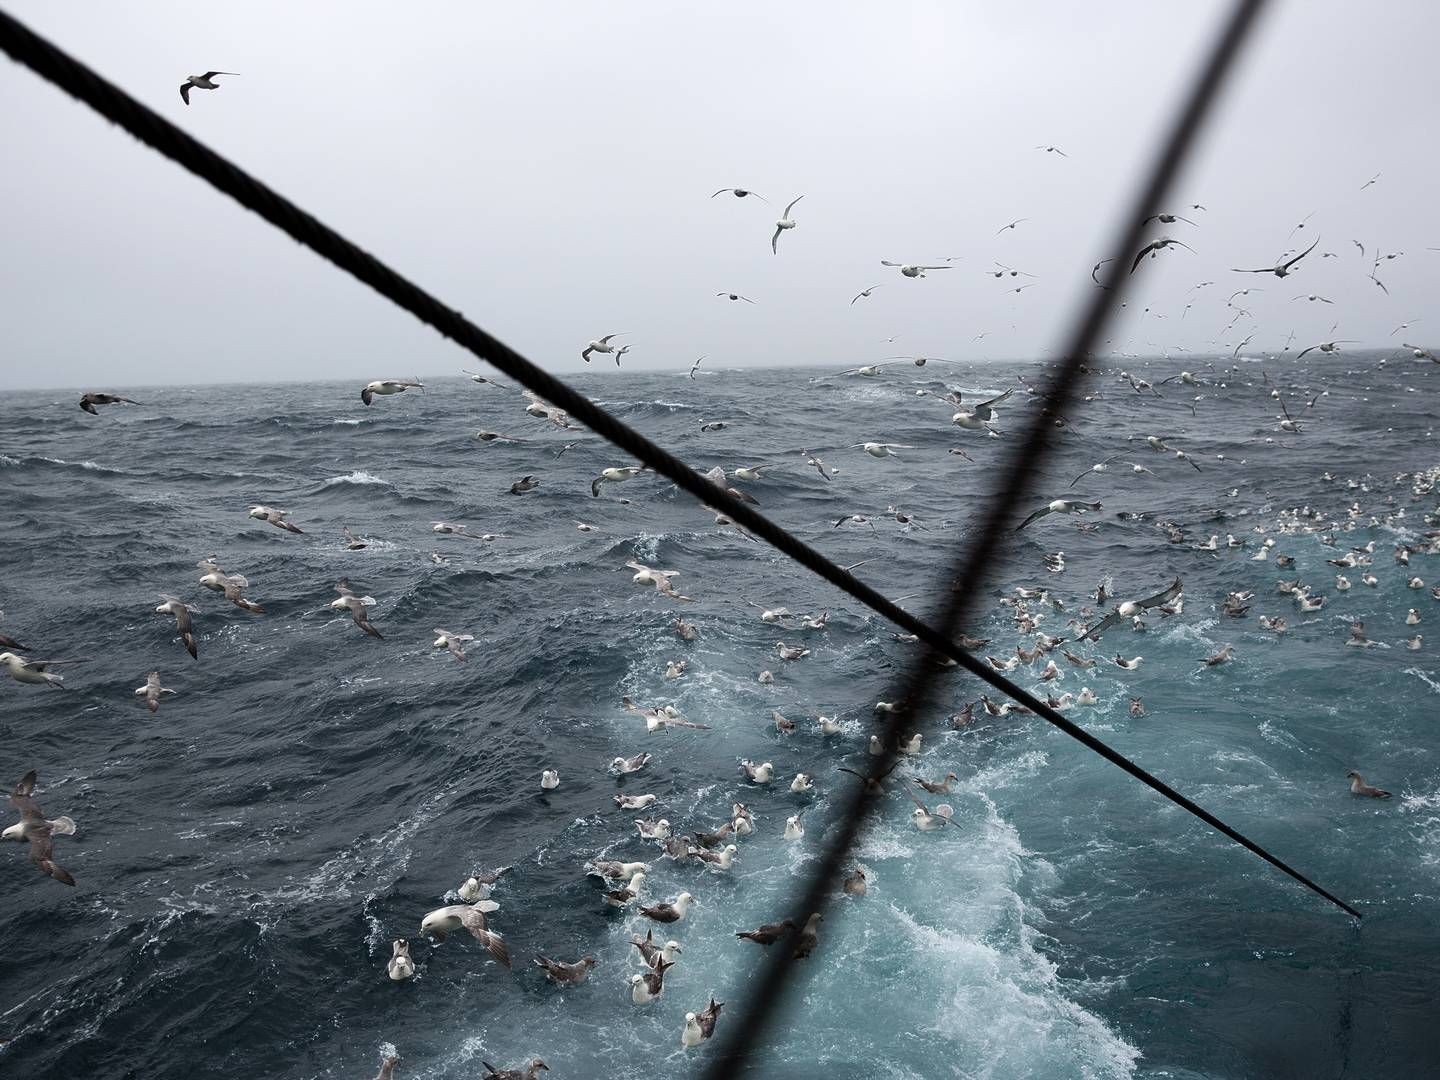 Hårdt russisk fiskeri i Østersøen "underminerer" mulighederne for at genopbygge de pressede bestande, advarer flere EU-lande. De kræver handling. i(ARKIV / ILLUSTRATION) | Foto: Per Folkver